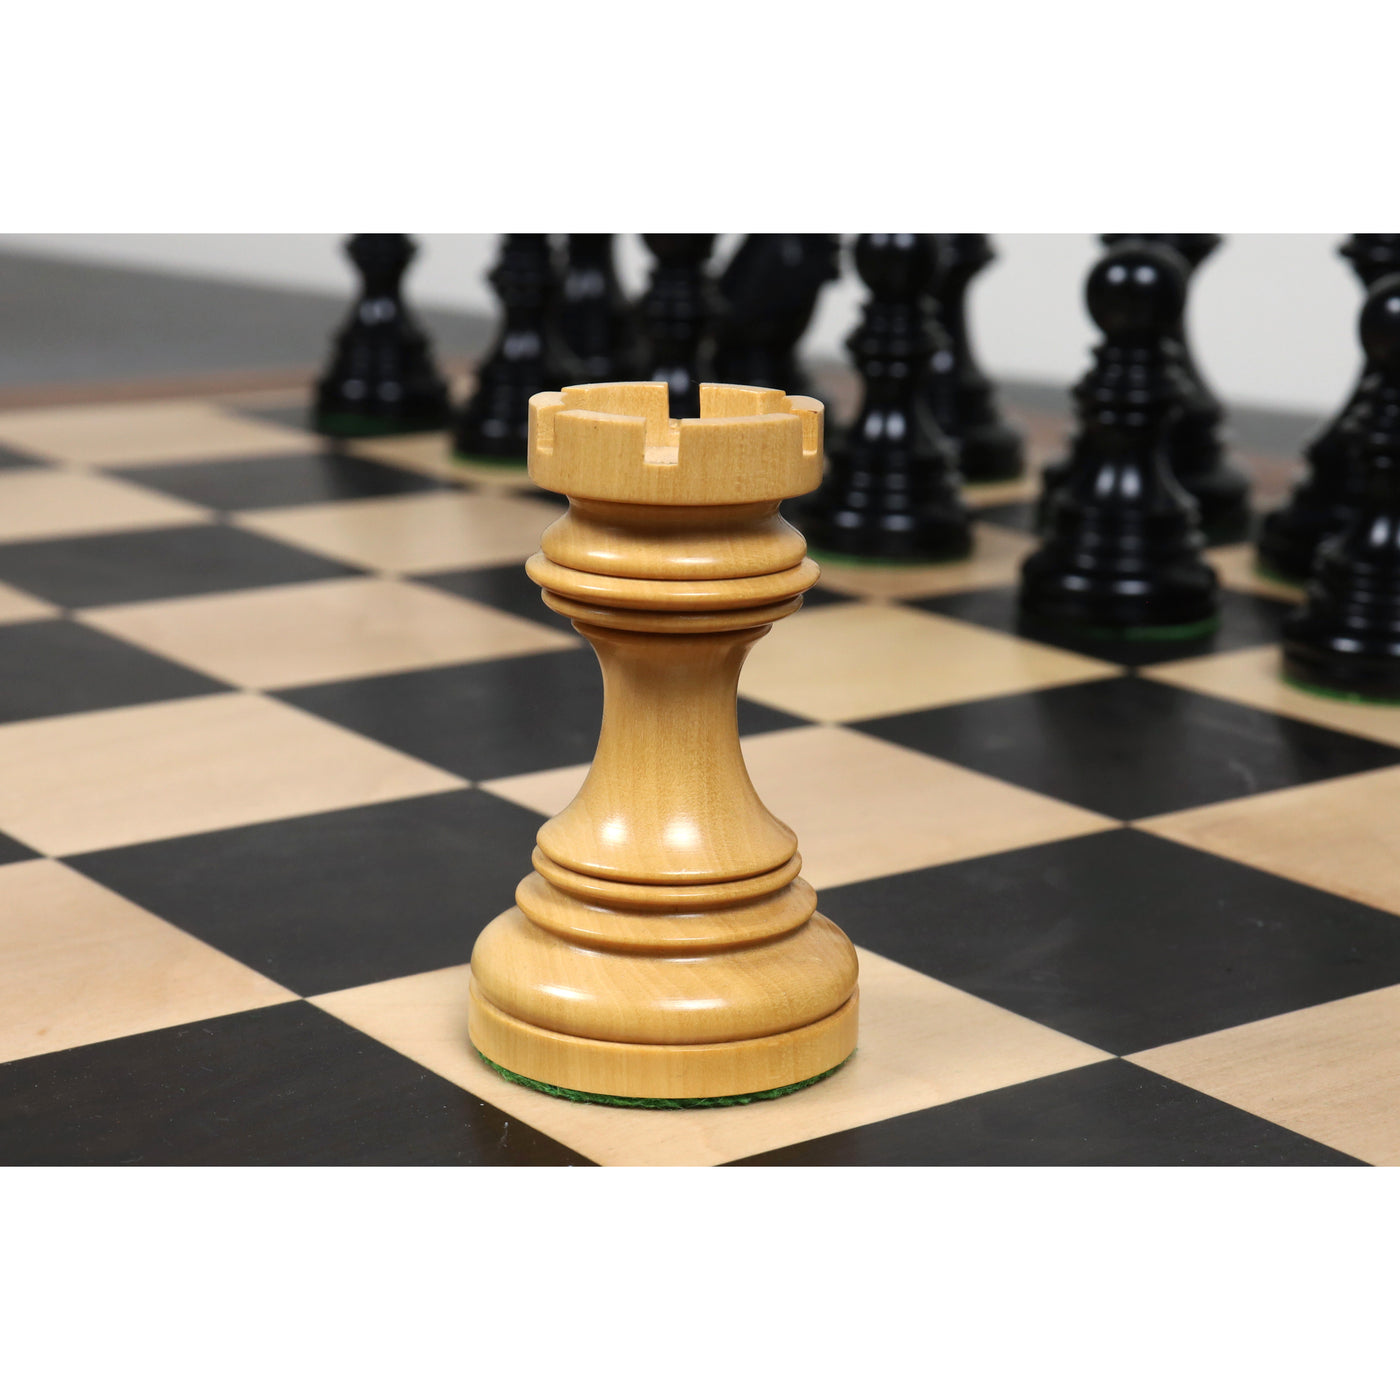 Stallion Staunton Luxury Chess Pieces Set